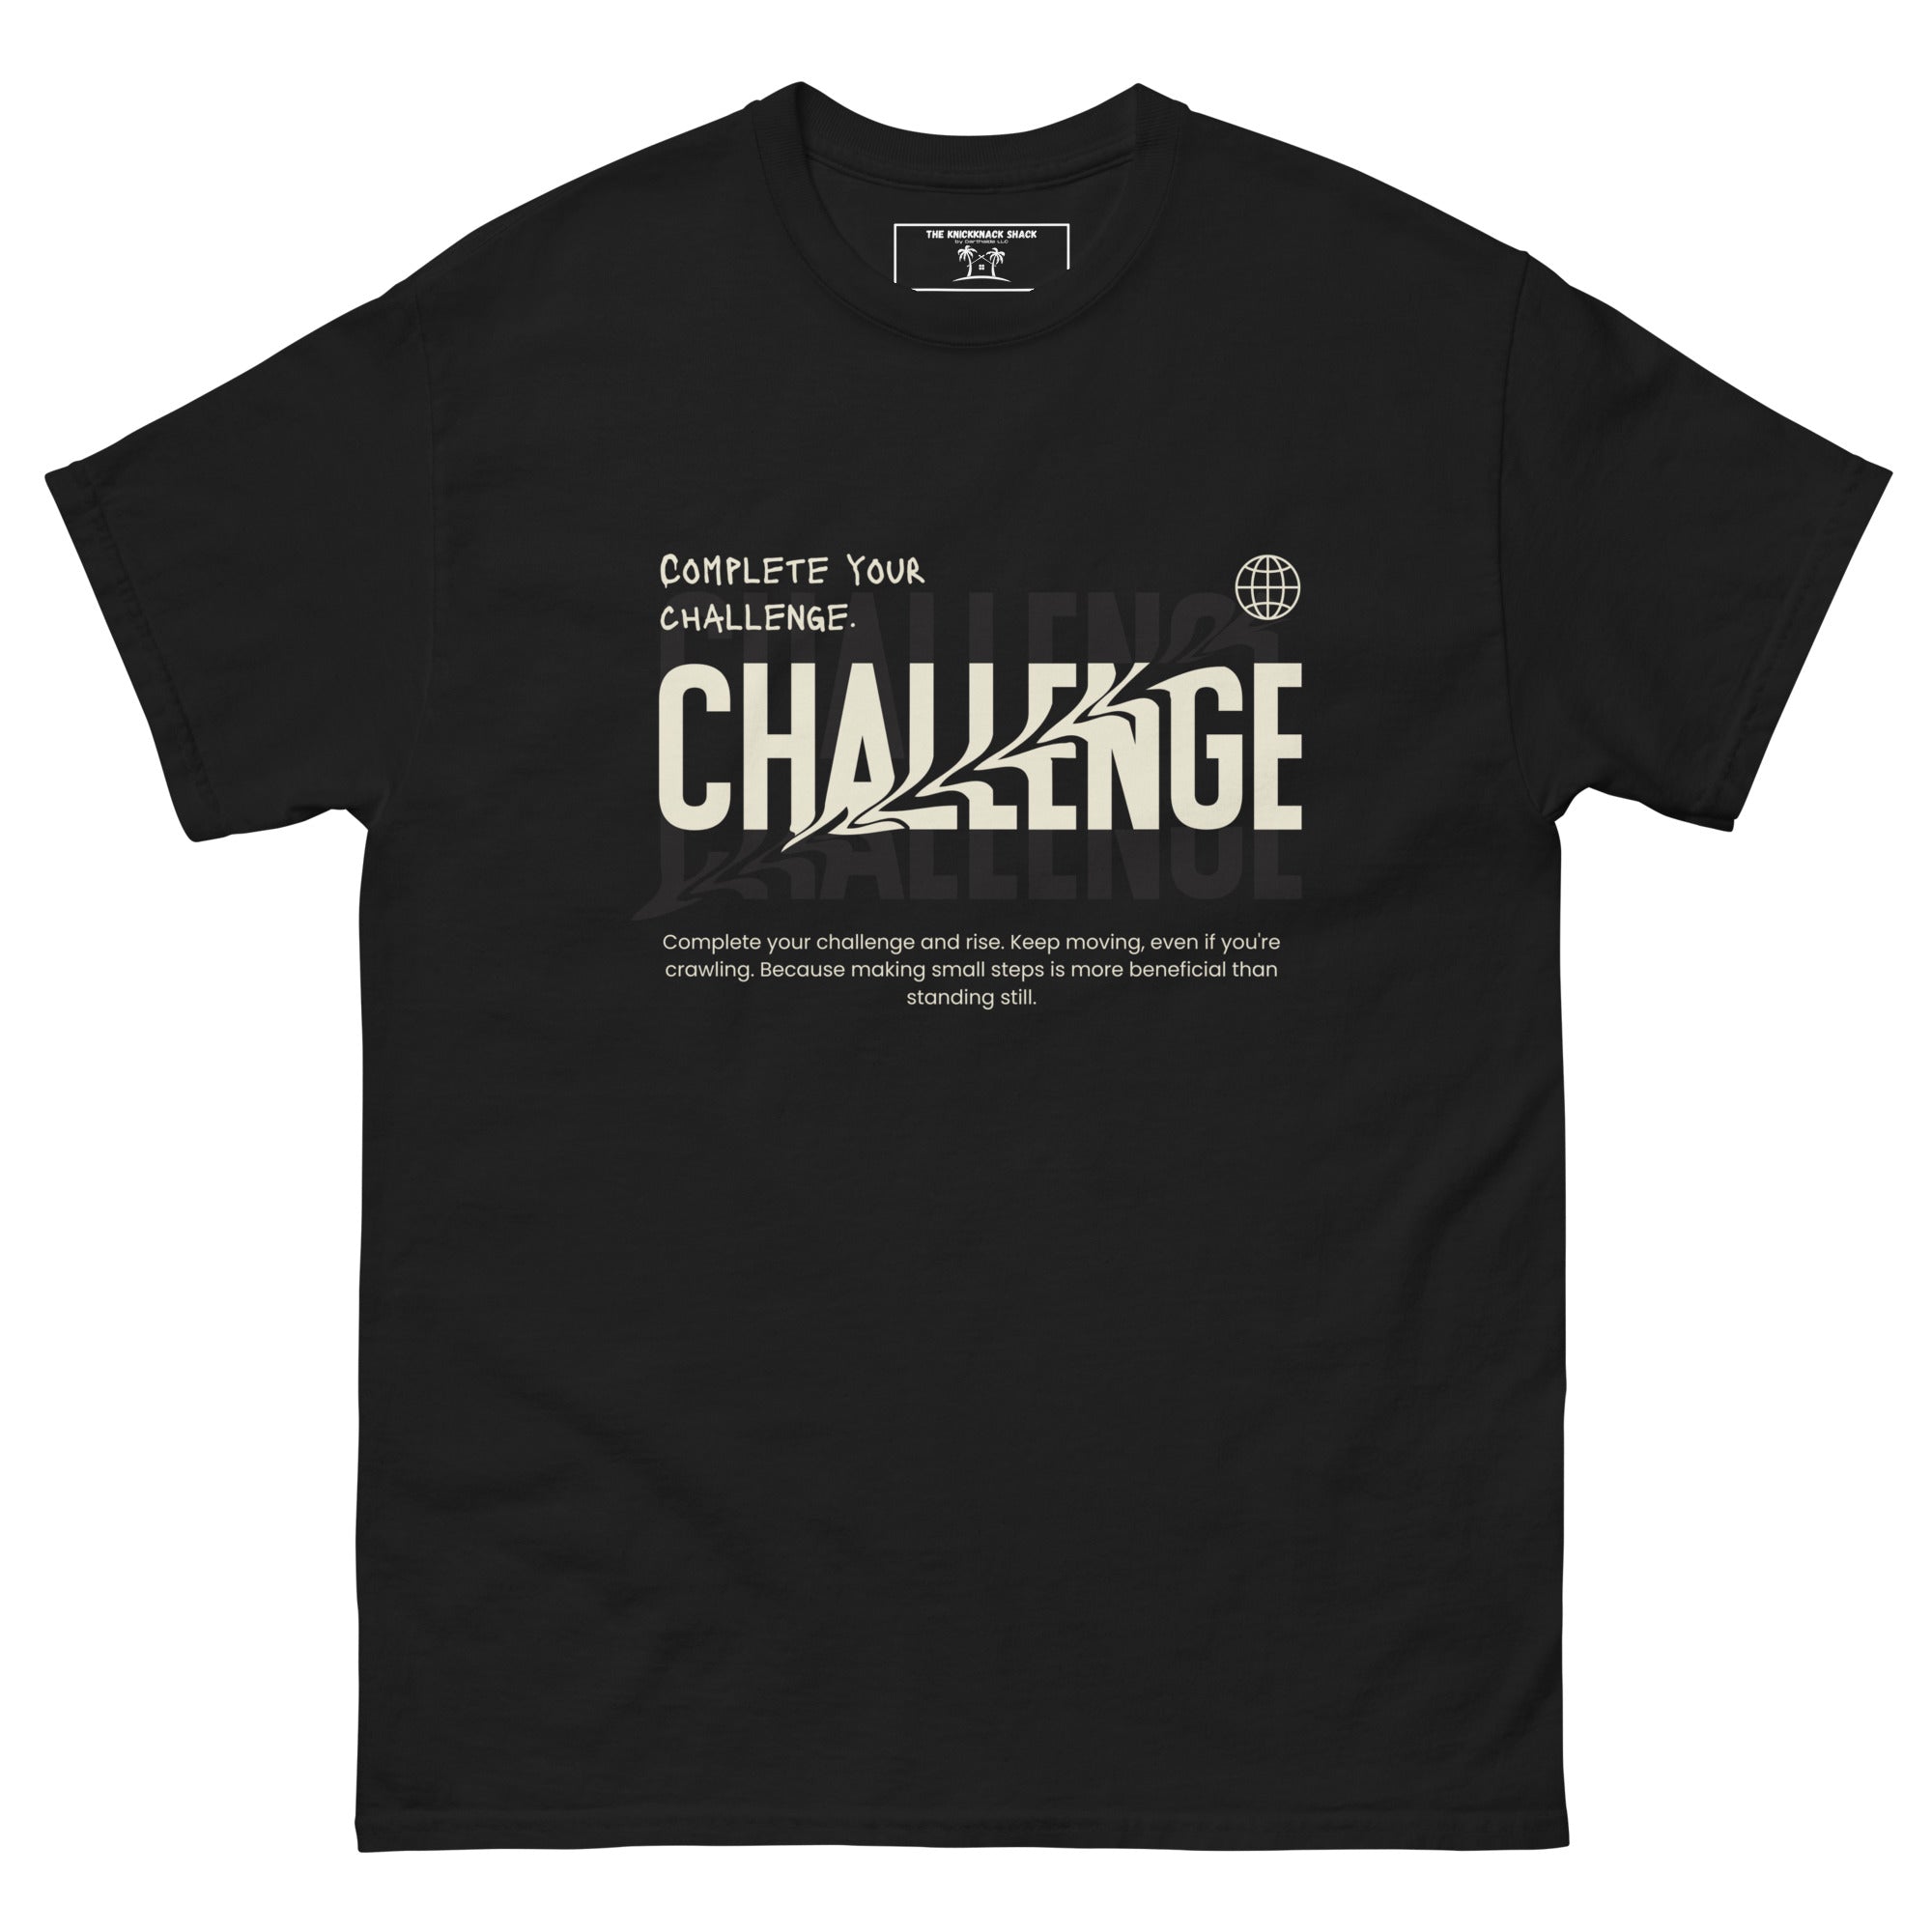 Camiseta clásica: completa tu desafío (colores oscuros)